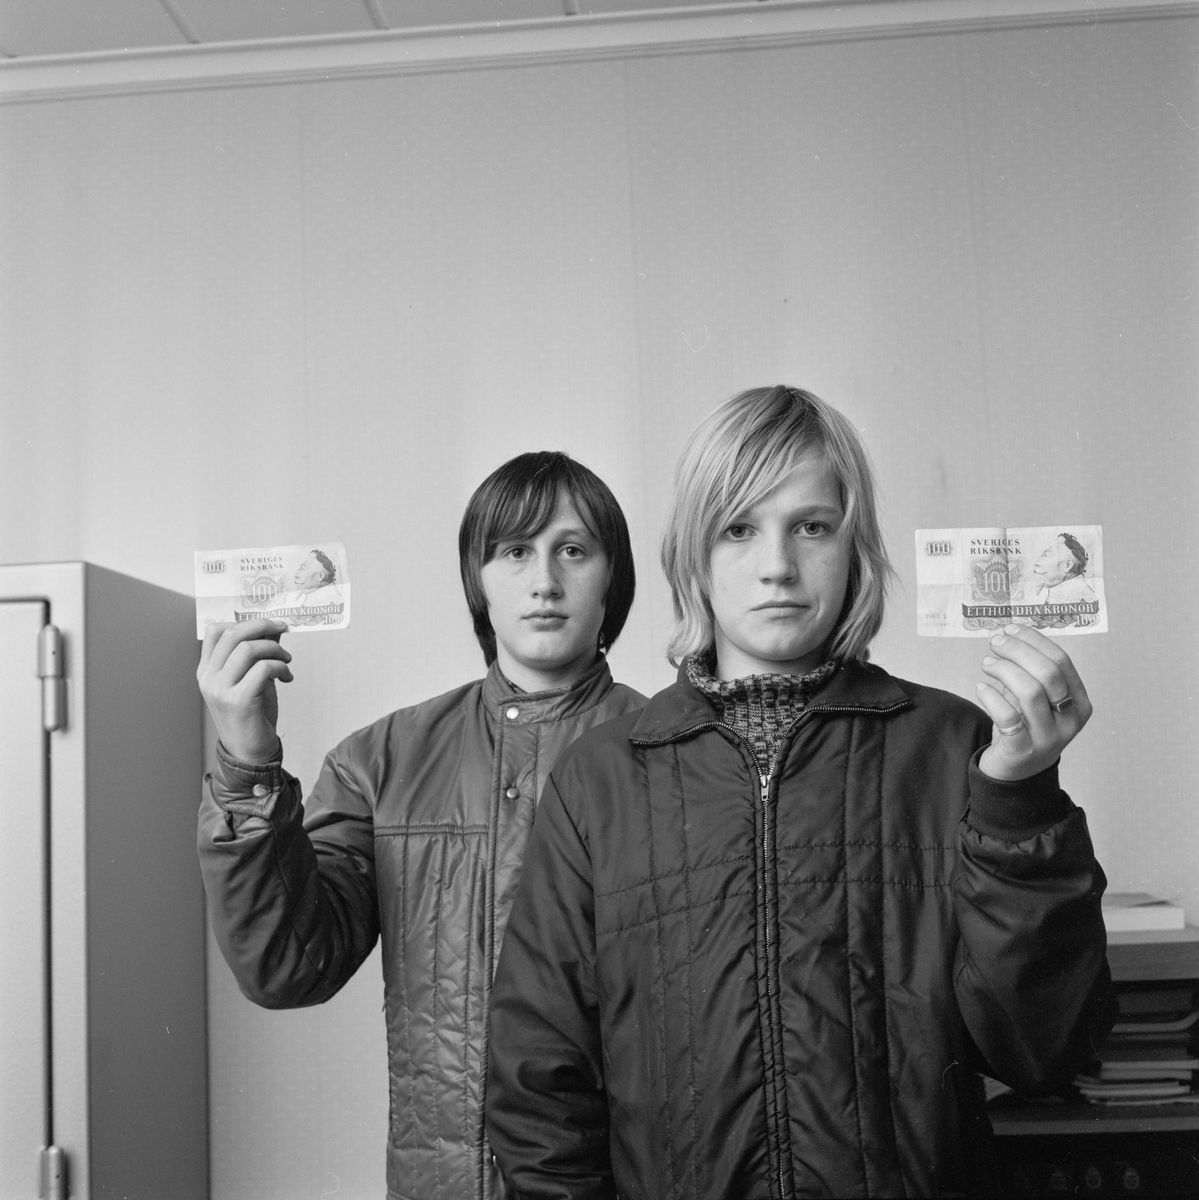 Pojkar belönade, stoppade rattfyllerist, Österby, Uppland, november 1971